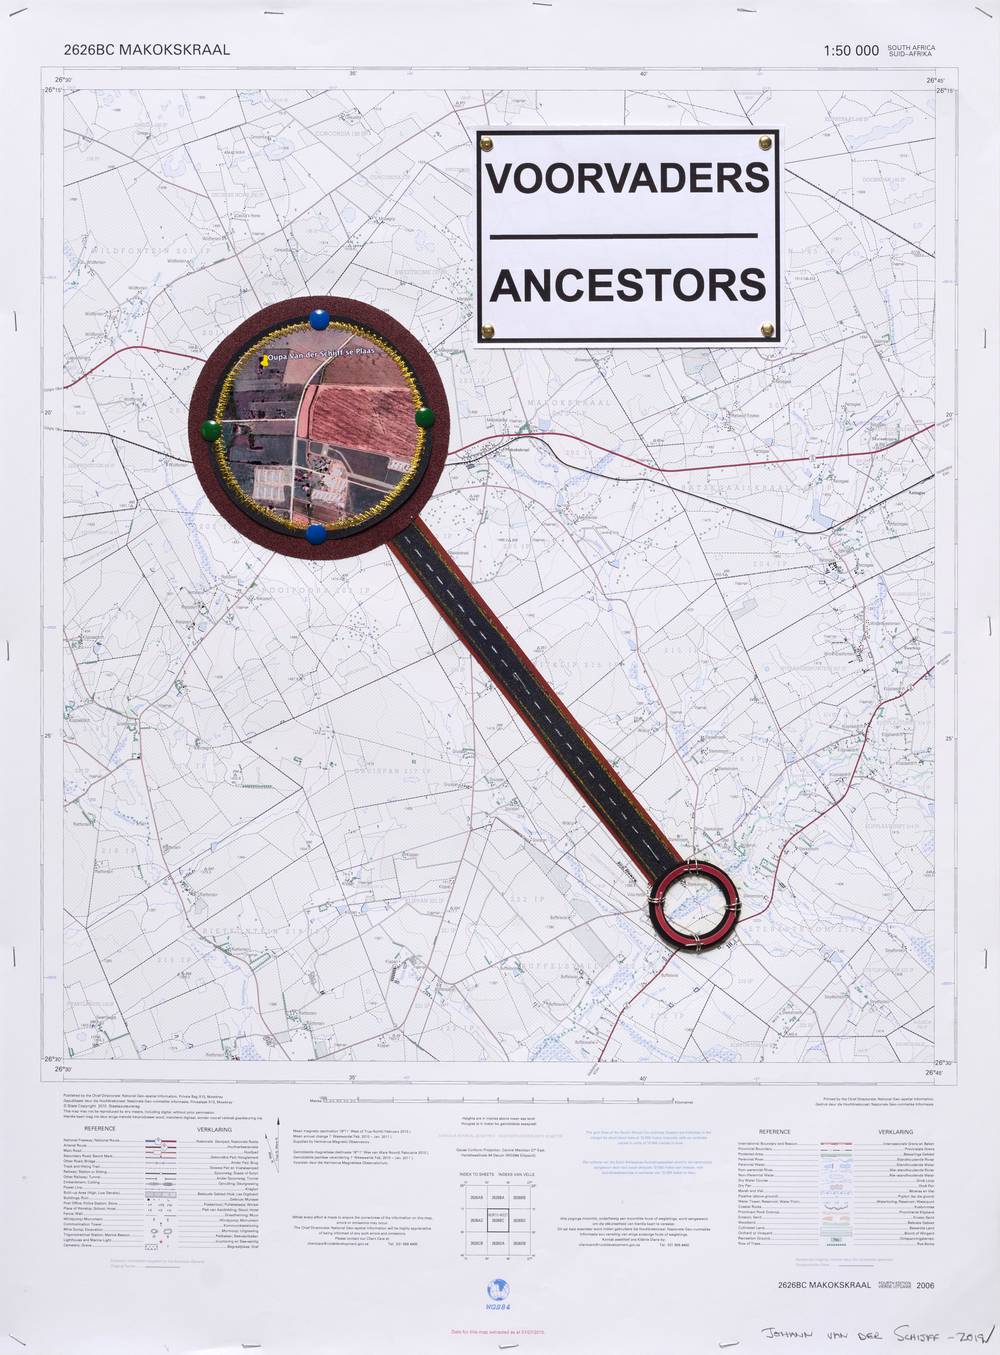 Voorvaders (Ancestors), 2019 – Johann van der Schijff